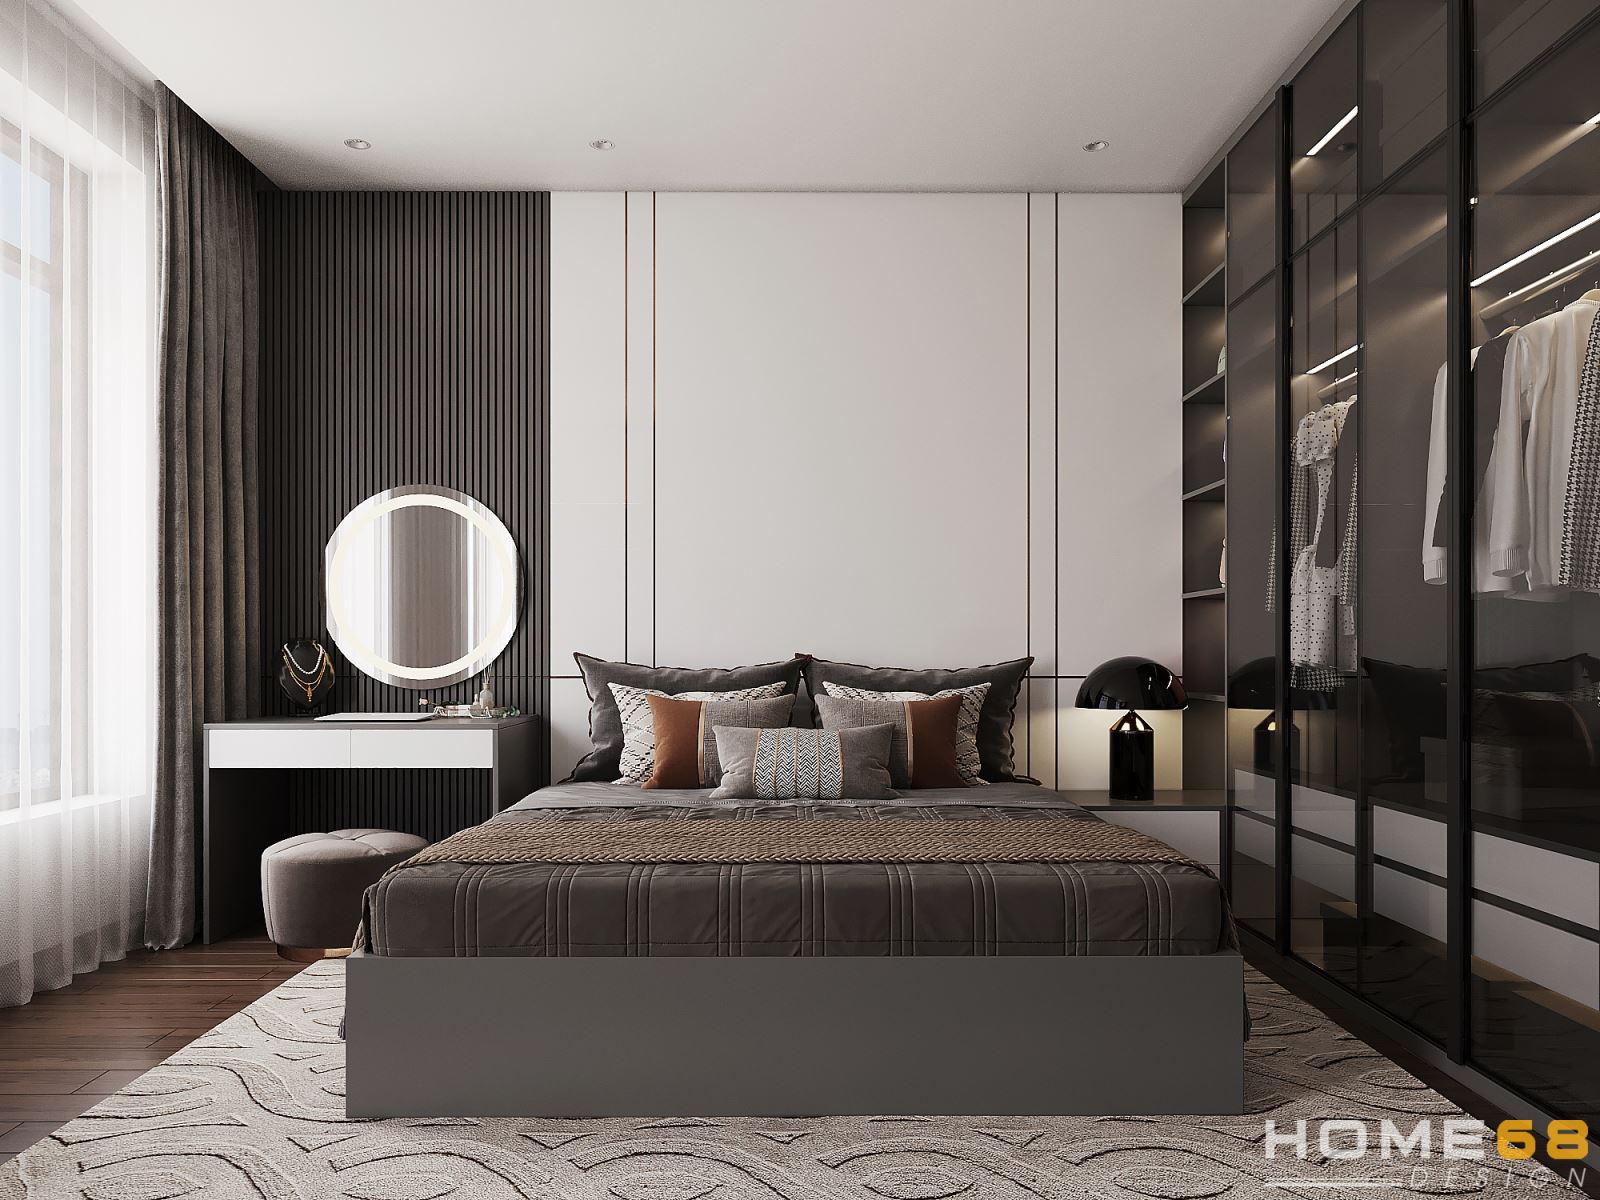 Khám phá mẫu thiết kế nội thất phòng ngủ hiện đại, cực tinh tế tại HOME68